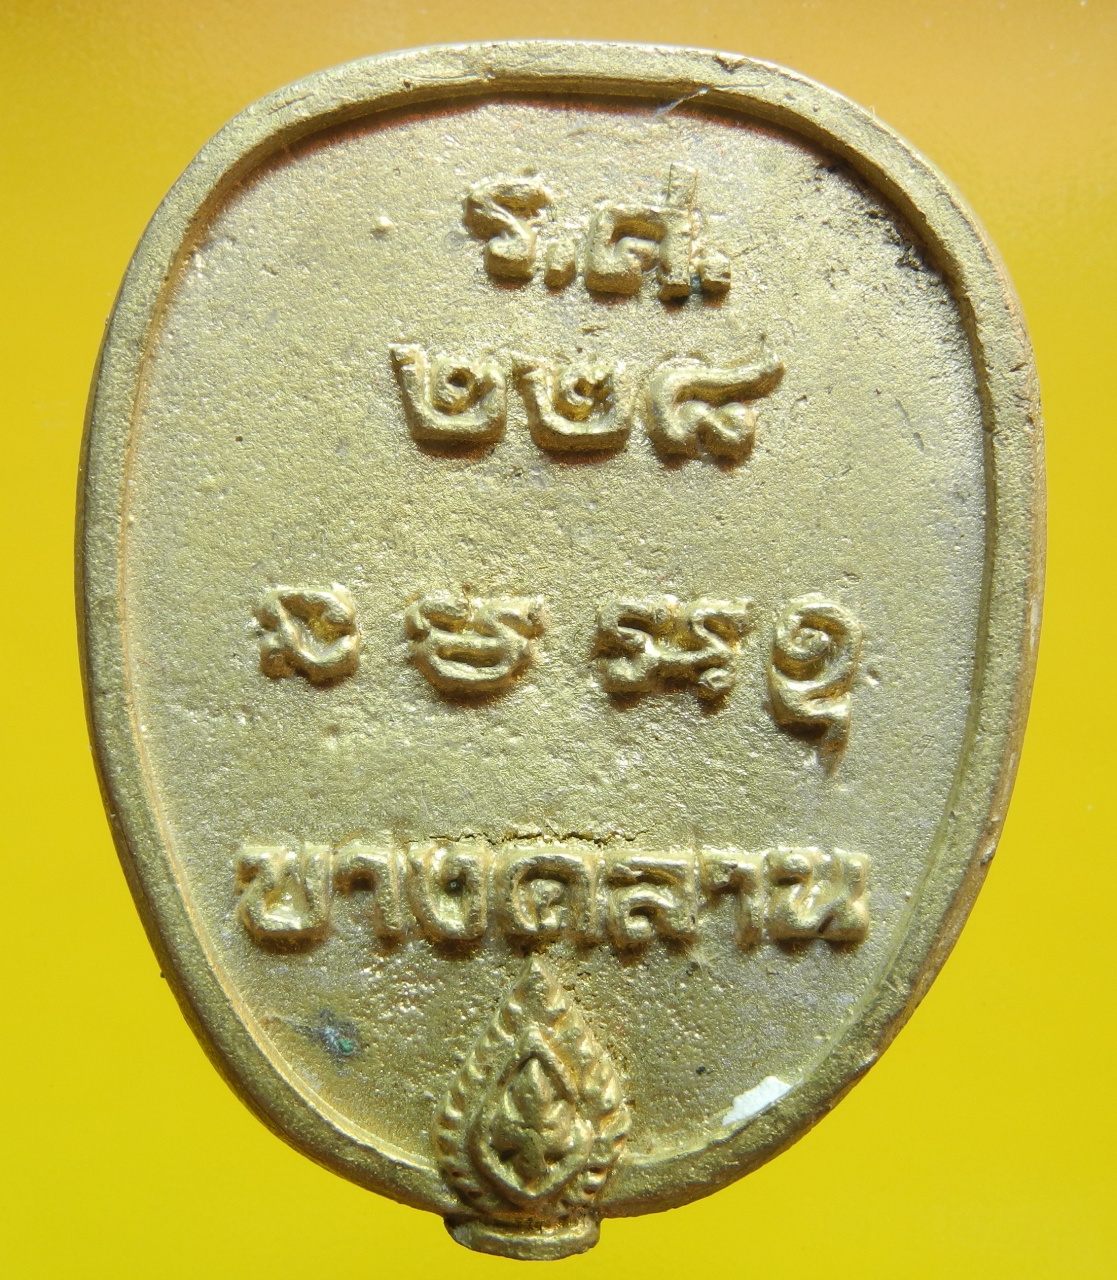 ภาพที่ 2 เหรียญหล่อหลวงพ่อเงิน วัดบางคลาน ร.ศ.228